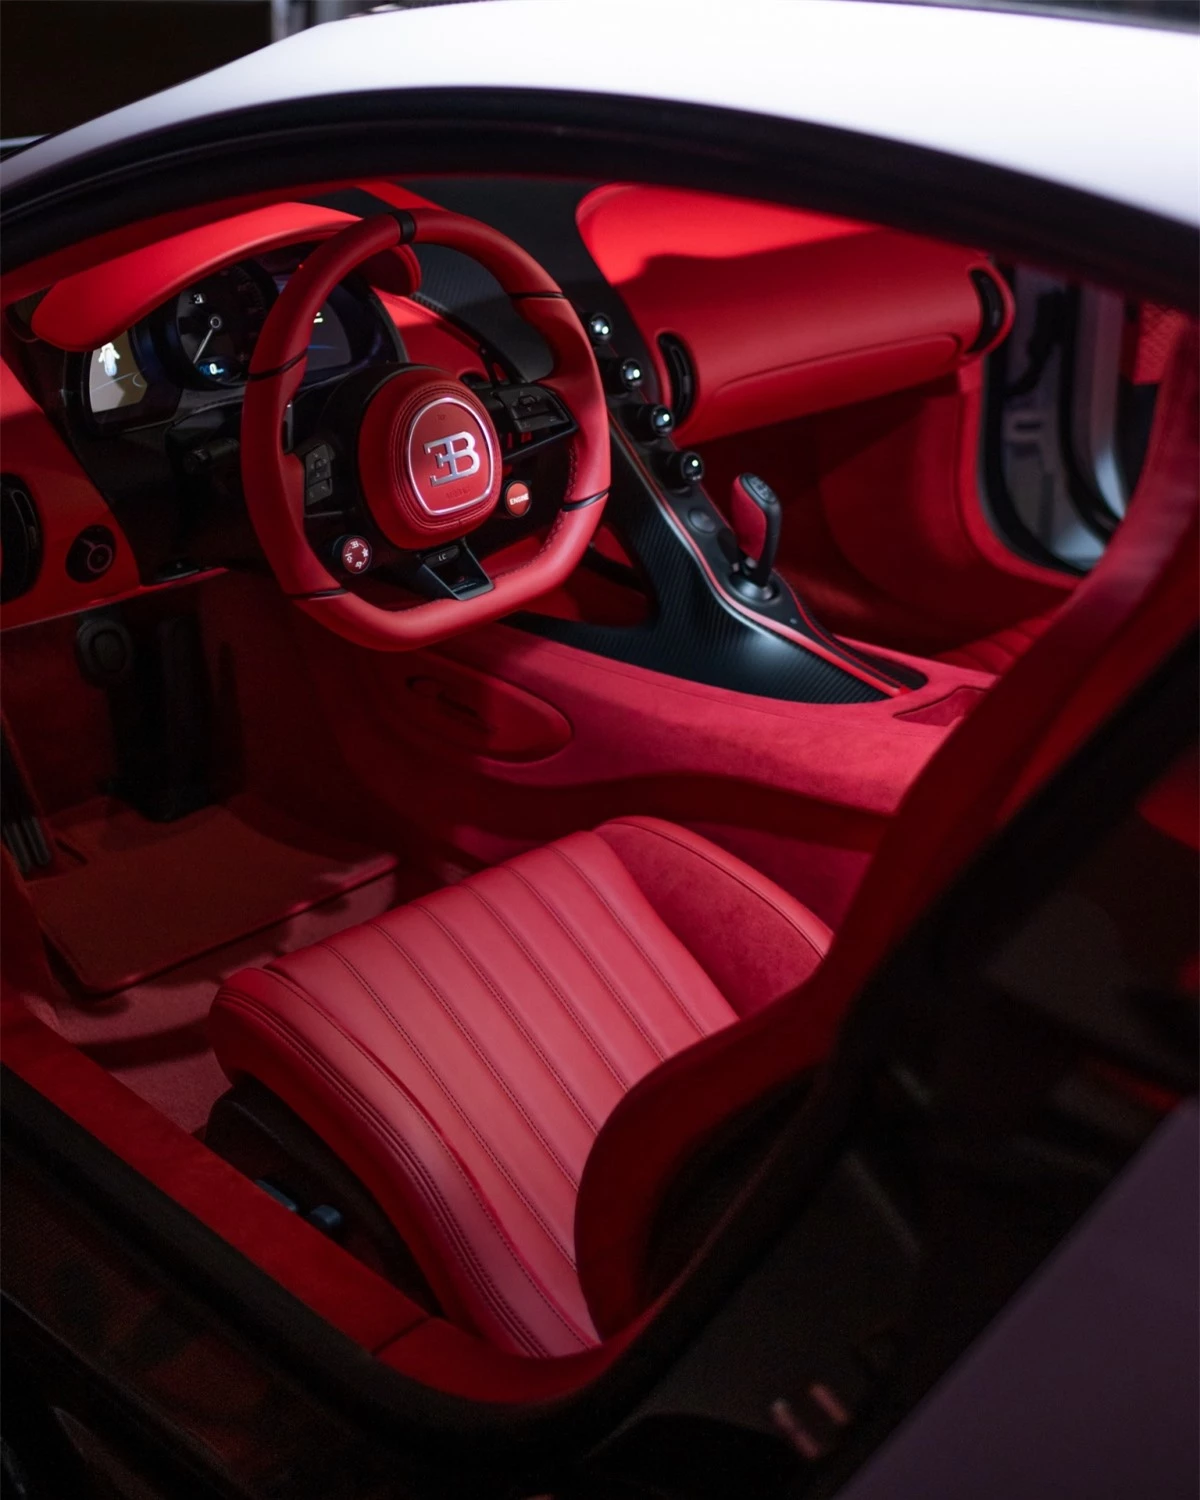  Hệ thống treo còn sở hữu bộ lò xo mới với độ cứng 166 N/mm ở bánh trước và 200 N/mm ở bánh xe sau, tạo sự cứng chắc cần thiết nhưng không làm mất đi tính thoải mái của những chiếc Bugatti. Những tinh chỉnh của hệ thống treo trong lúc vận hành có thể được máy tính của xe hoàn thành một cách tự động trong chưa đầy 6 mili giây.